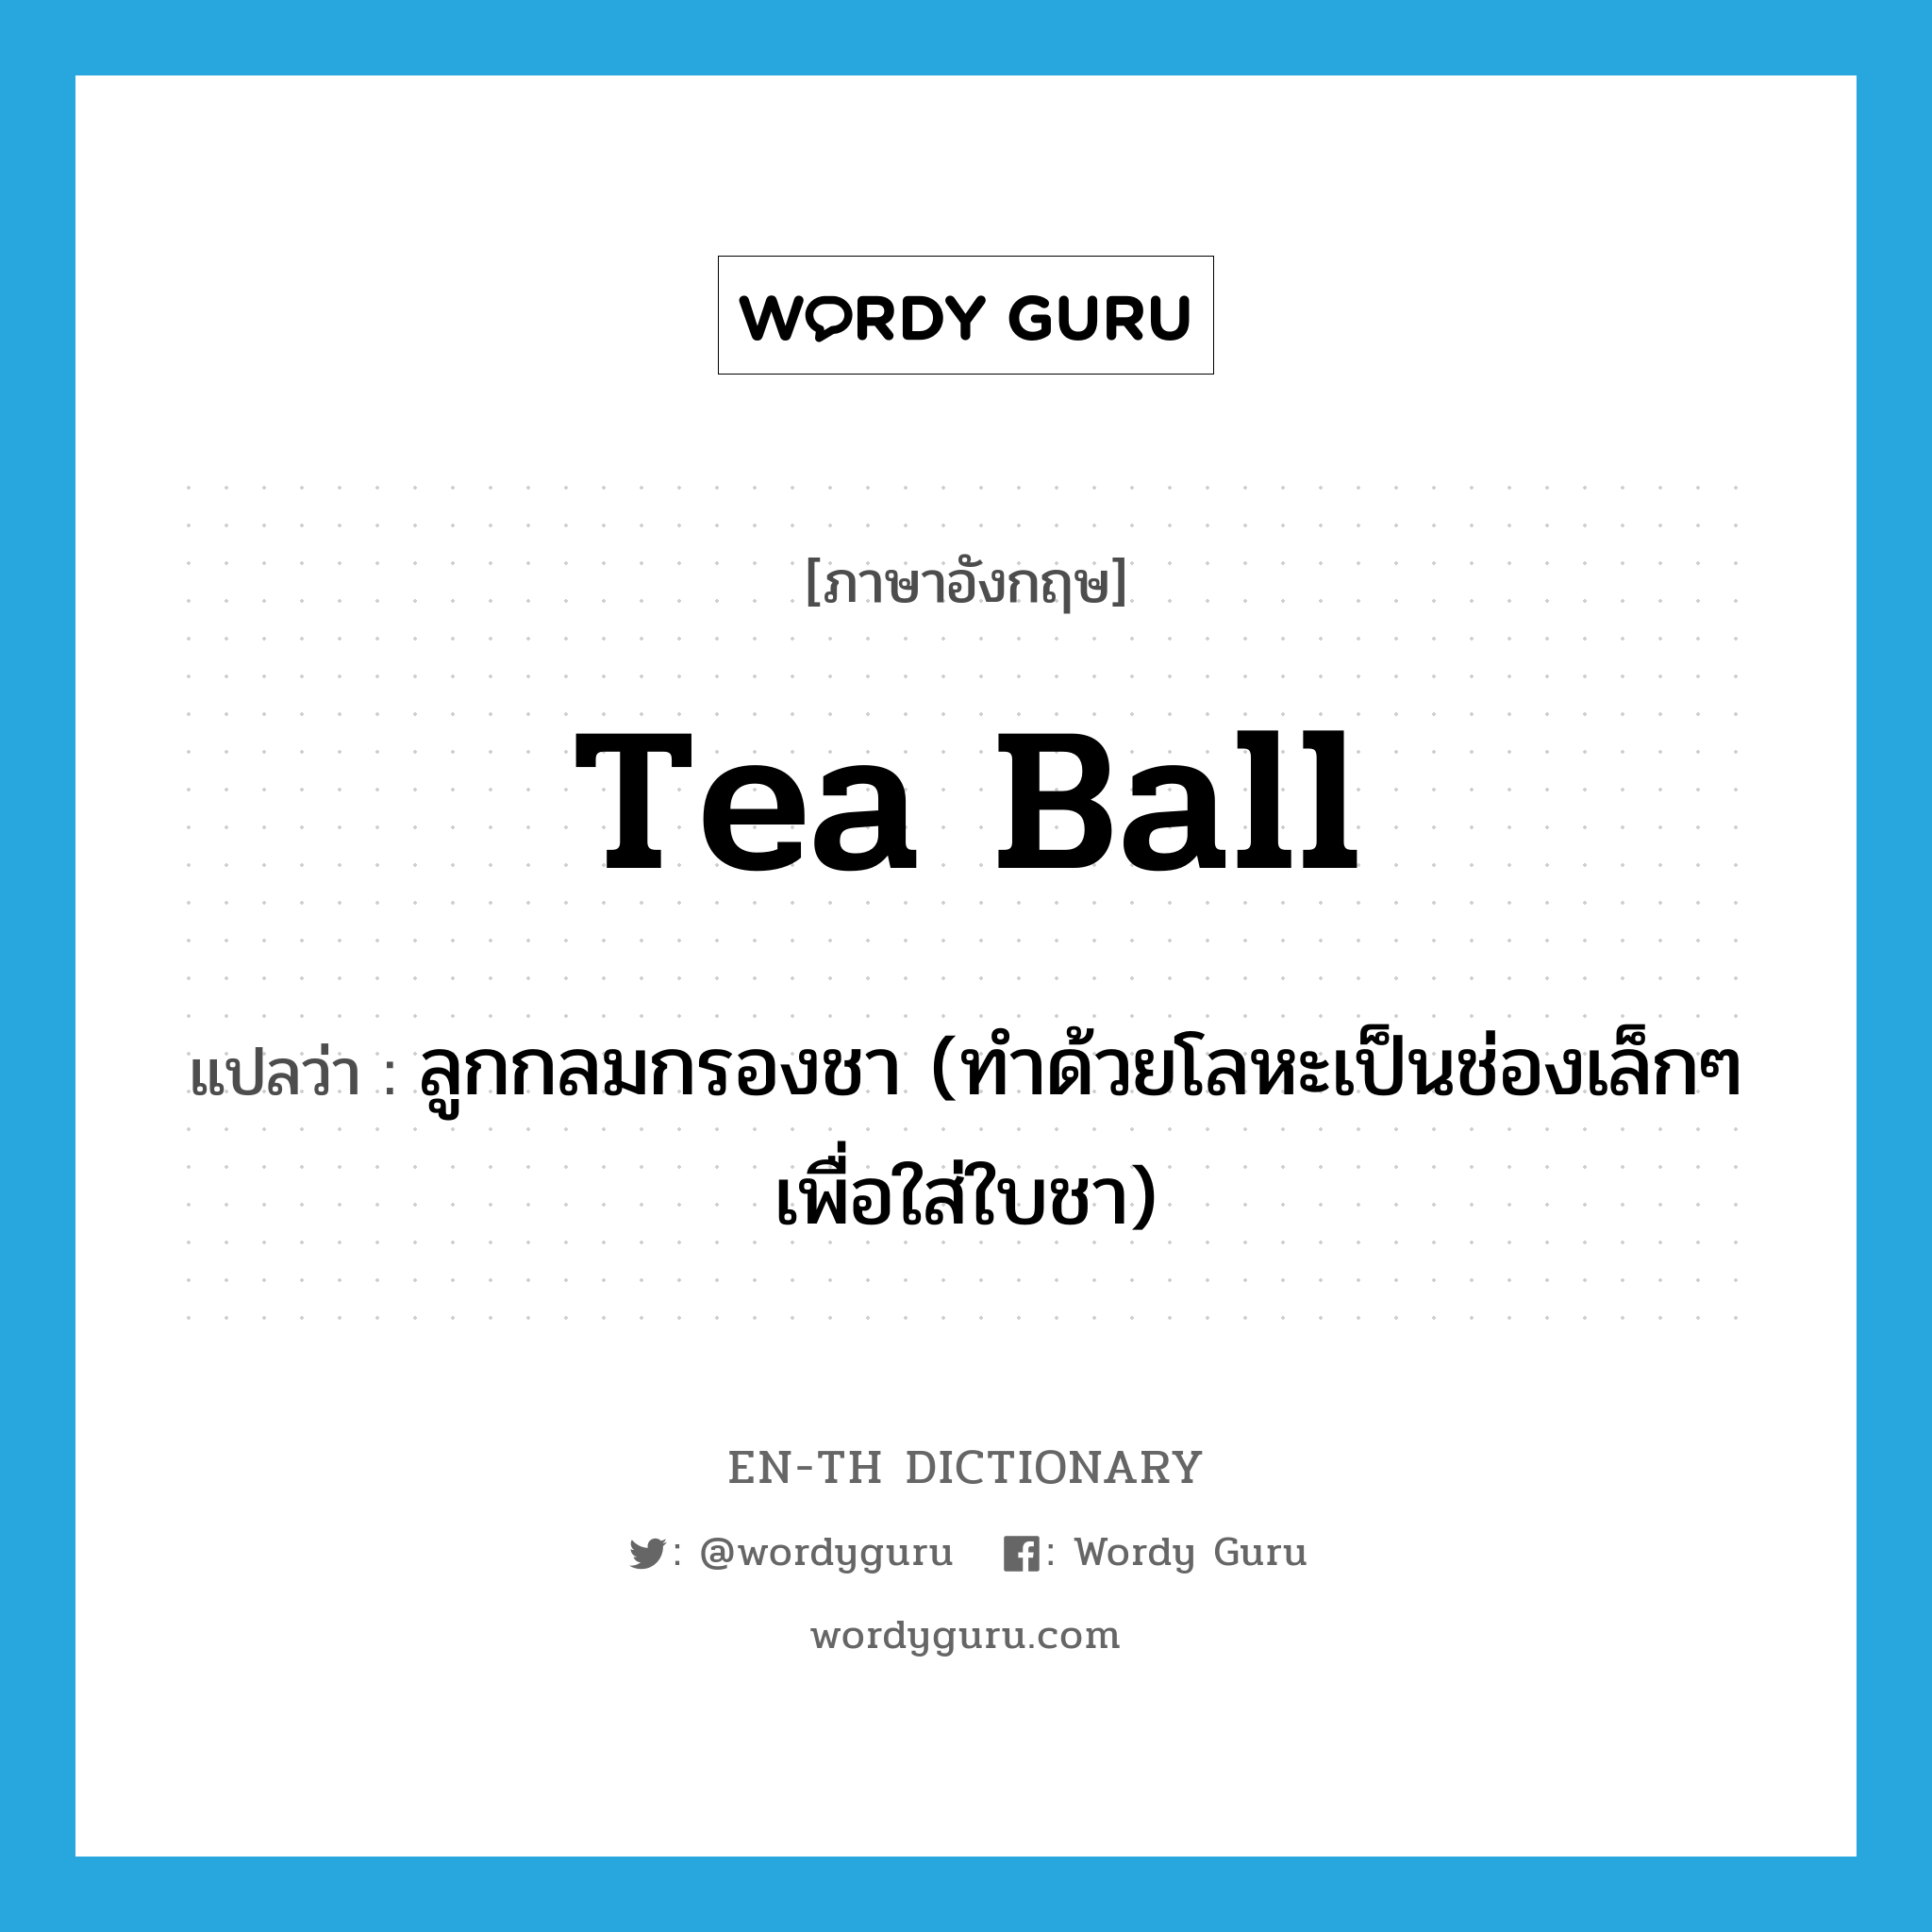 ลูกกลมกรองชา (ทำด้วยโลหะเป็นช่องเล็กๆ เพื่อใส่ใบชา) ภาษาอังกฤษ?, คำศัพท์ภาษาอังกฤษ ลูกกลมกรองชา (ทำด้วยโลหะเป็นช่องเล็กๆ เพื่อใส่ใบชา) แปลว่า tea ball ประเภท N หมวด N